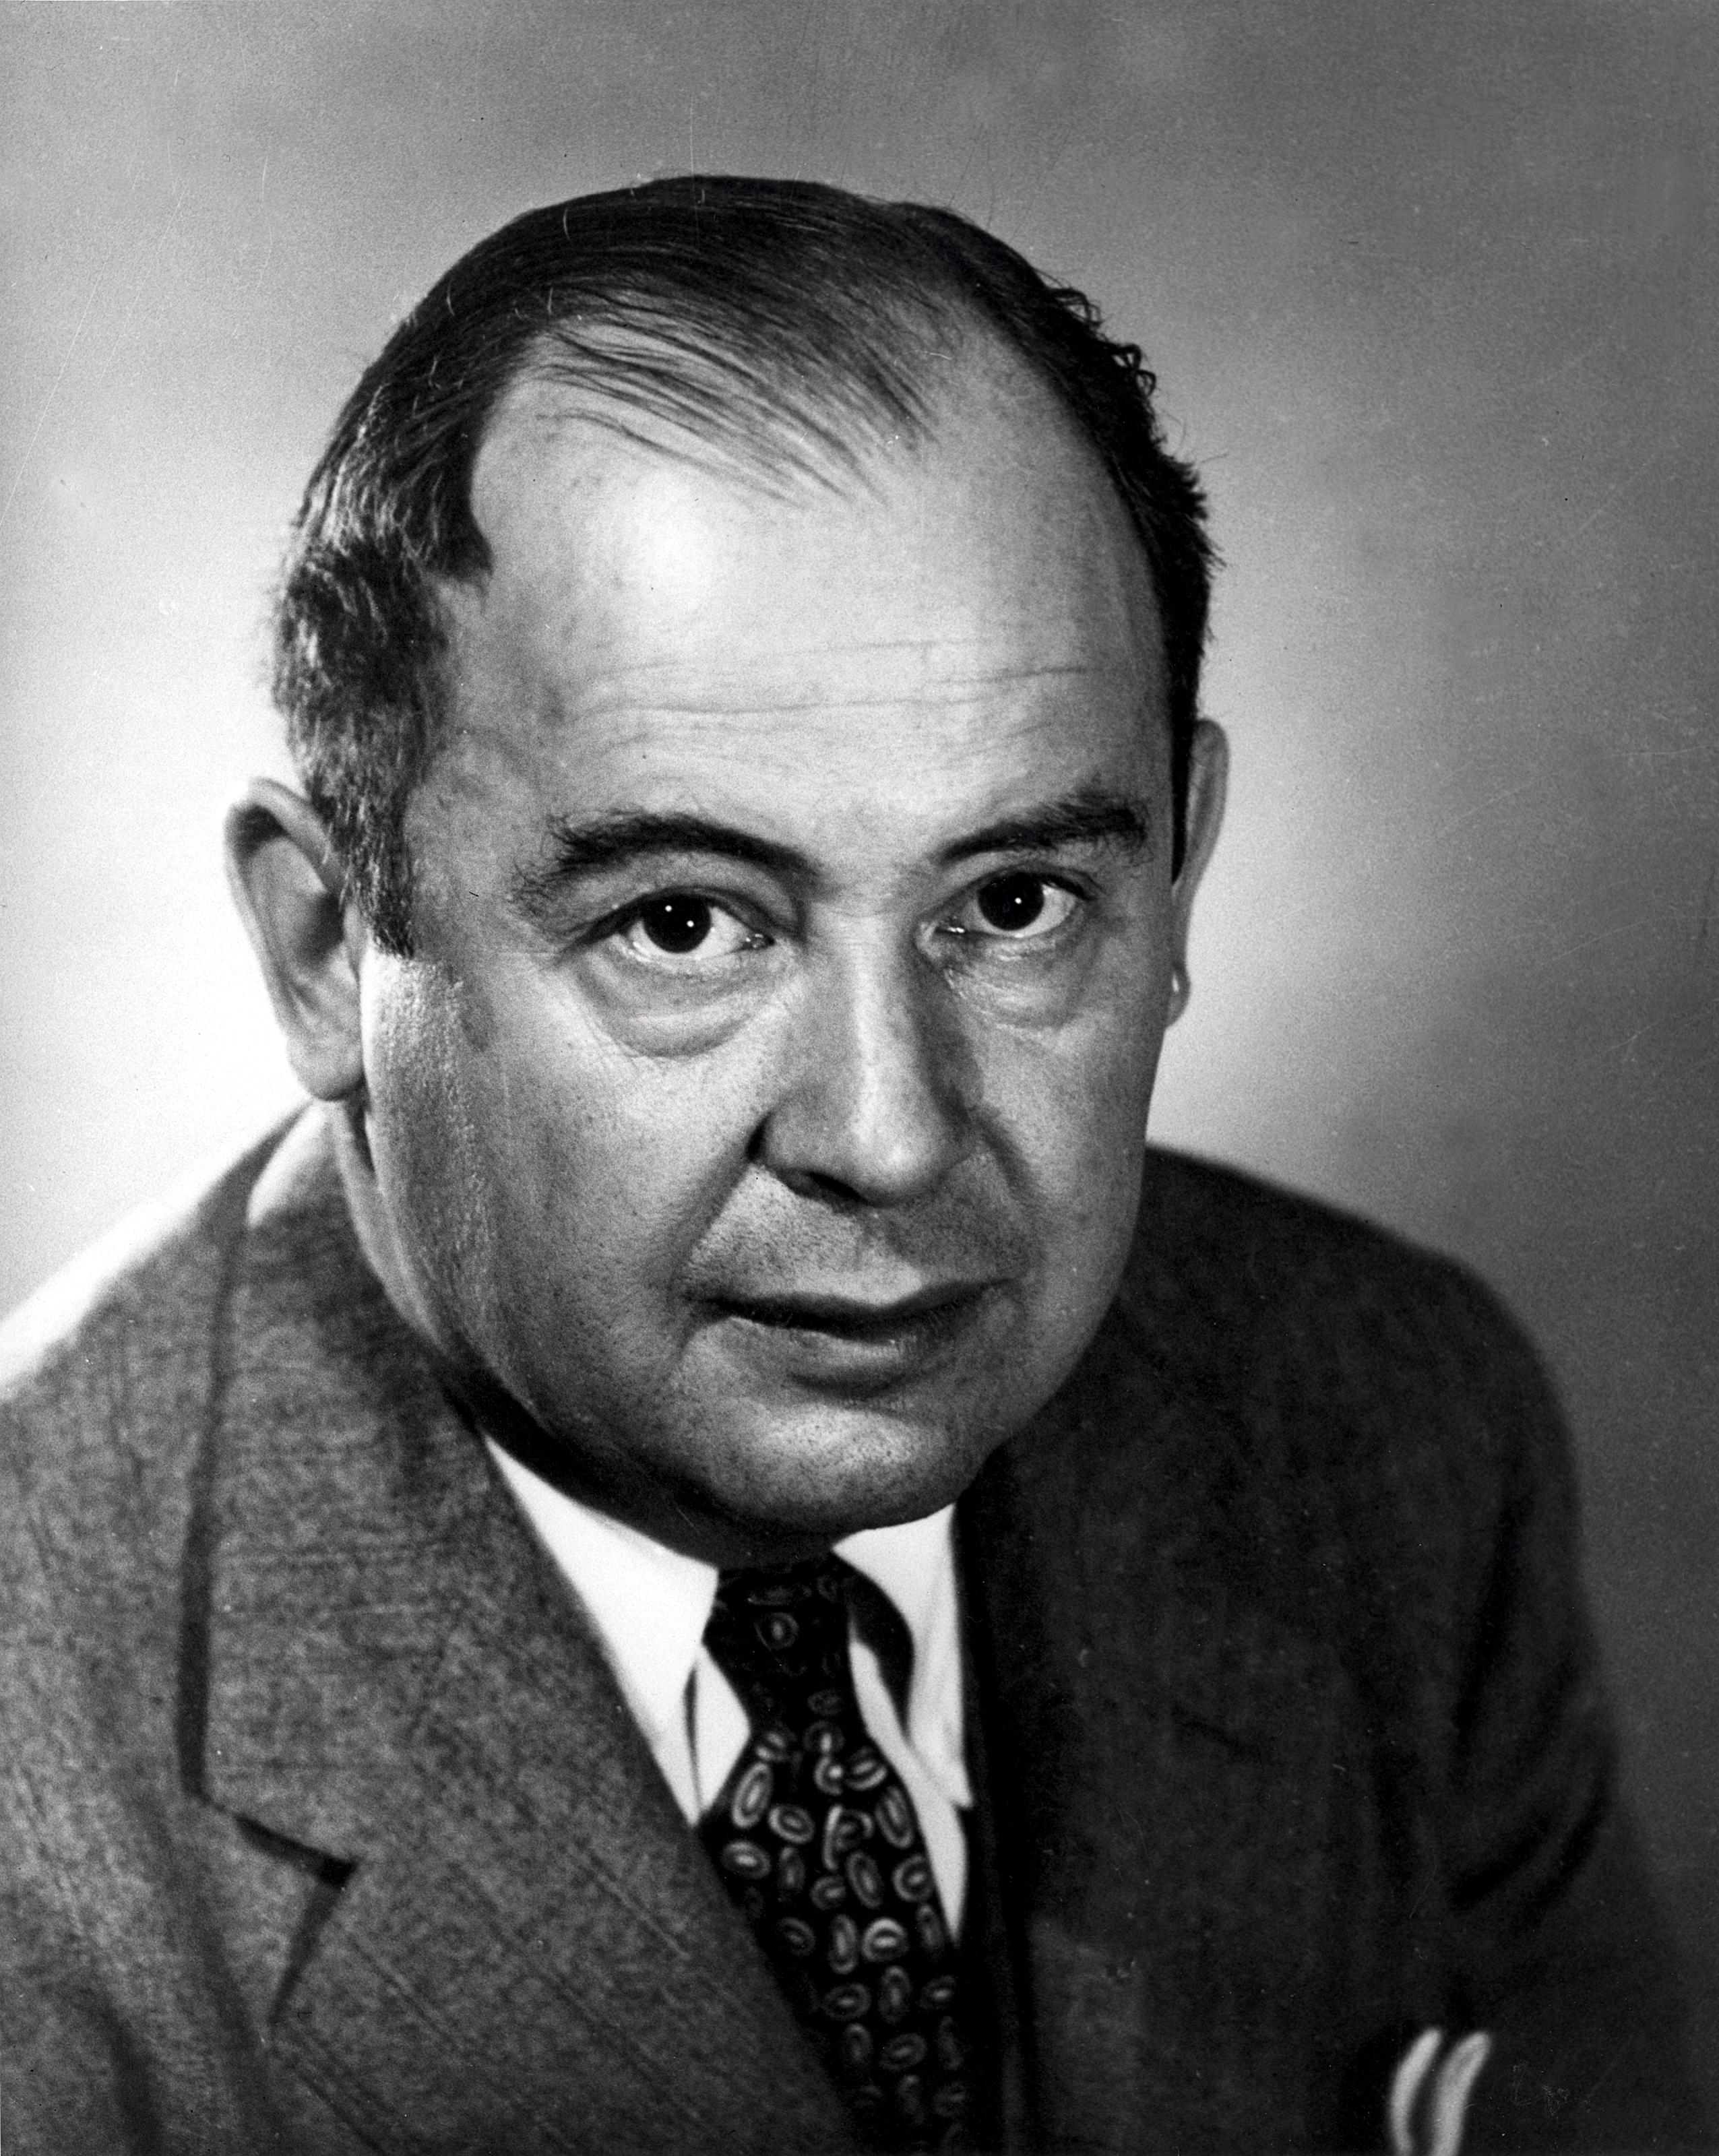  Biografie van John von Neumann